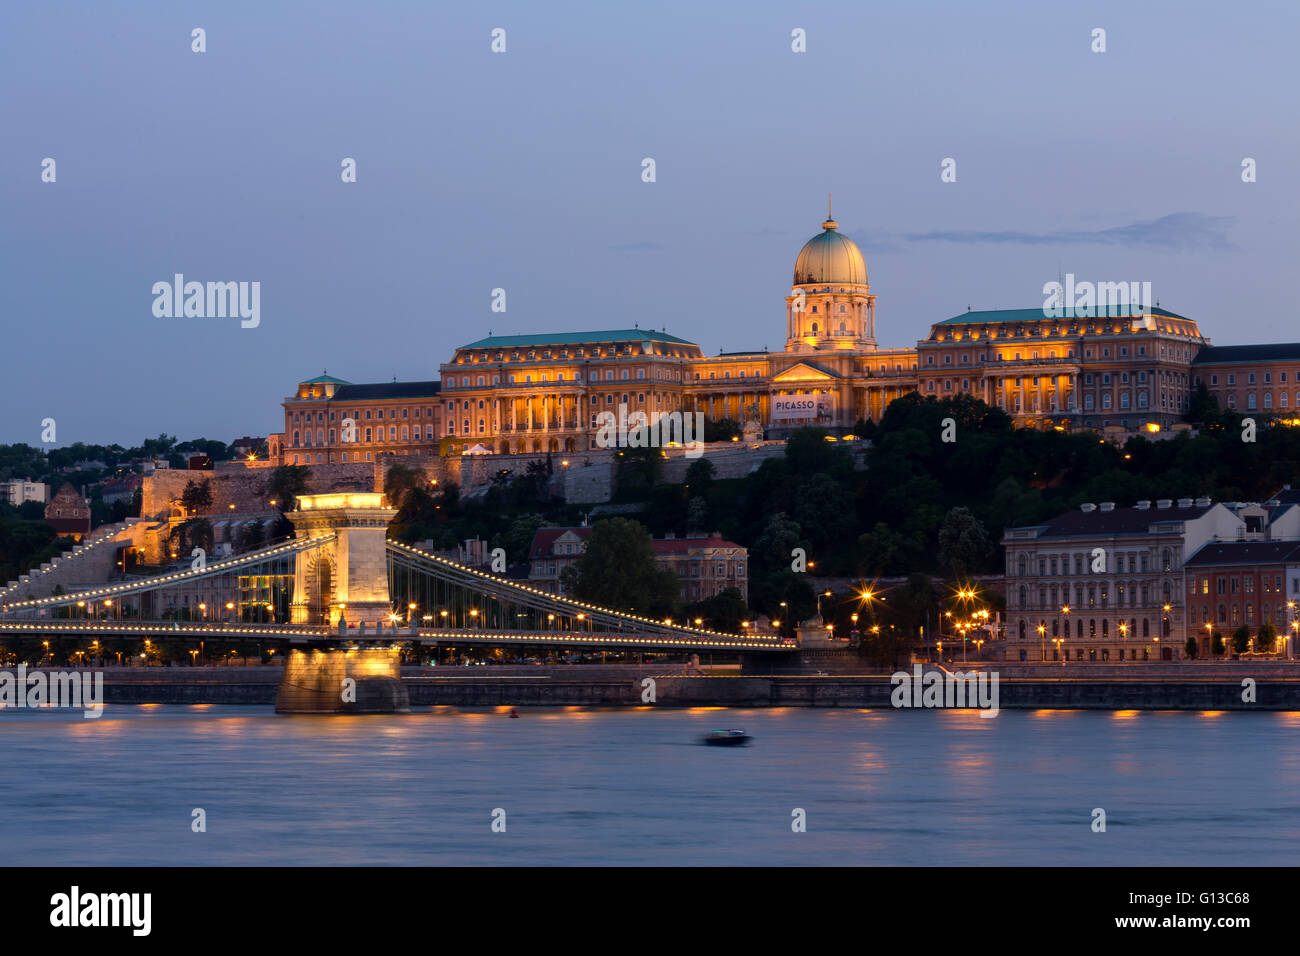 Vue sur le Pont des Chaînes et la colline du château avec Musée des beaux-arts au cours de l'exposition Picasso à Budapest au crépuscule Banque D'Images